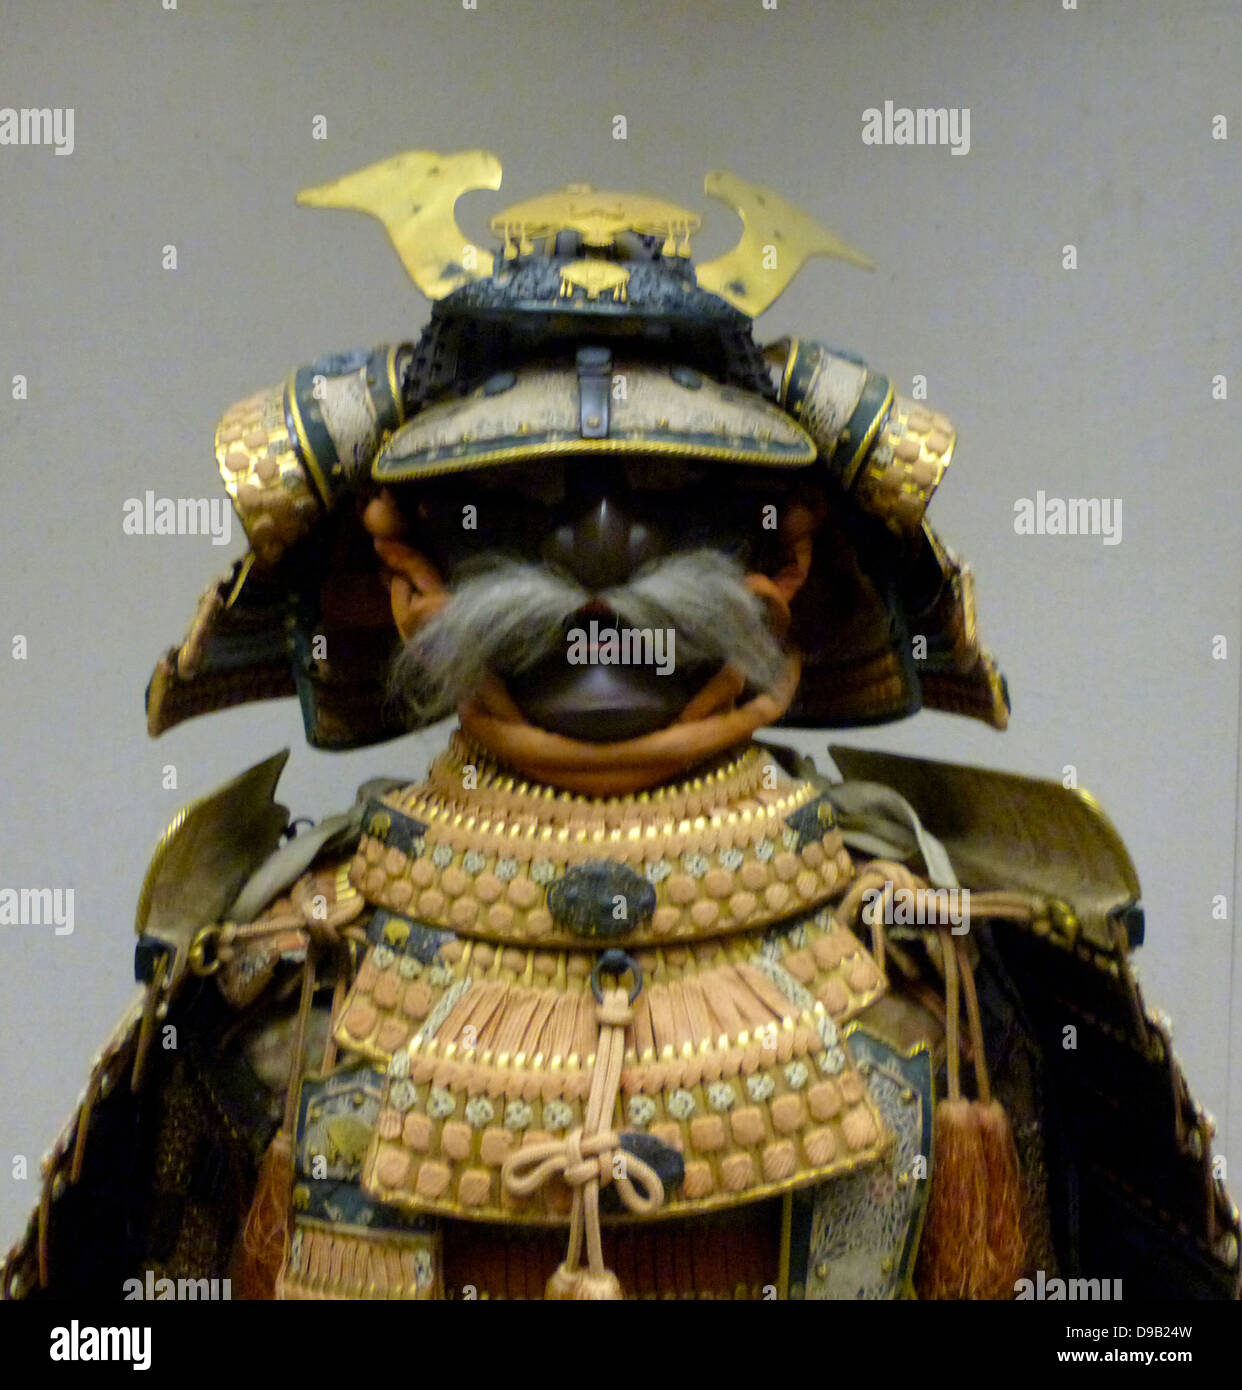 Helm aus einer Rüstung, die zu einer japanischen Samurai Warrior, circa 1560. Diese Rüstung während der Edo Periode, während der gemacht wurde, samurai Rüstung trug nur zu zeremoniellen Anlässen. lackiertes Metall durch silk Kabel verbunden. Stockfoto